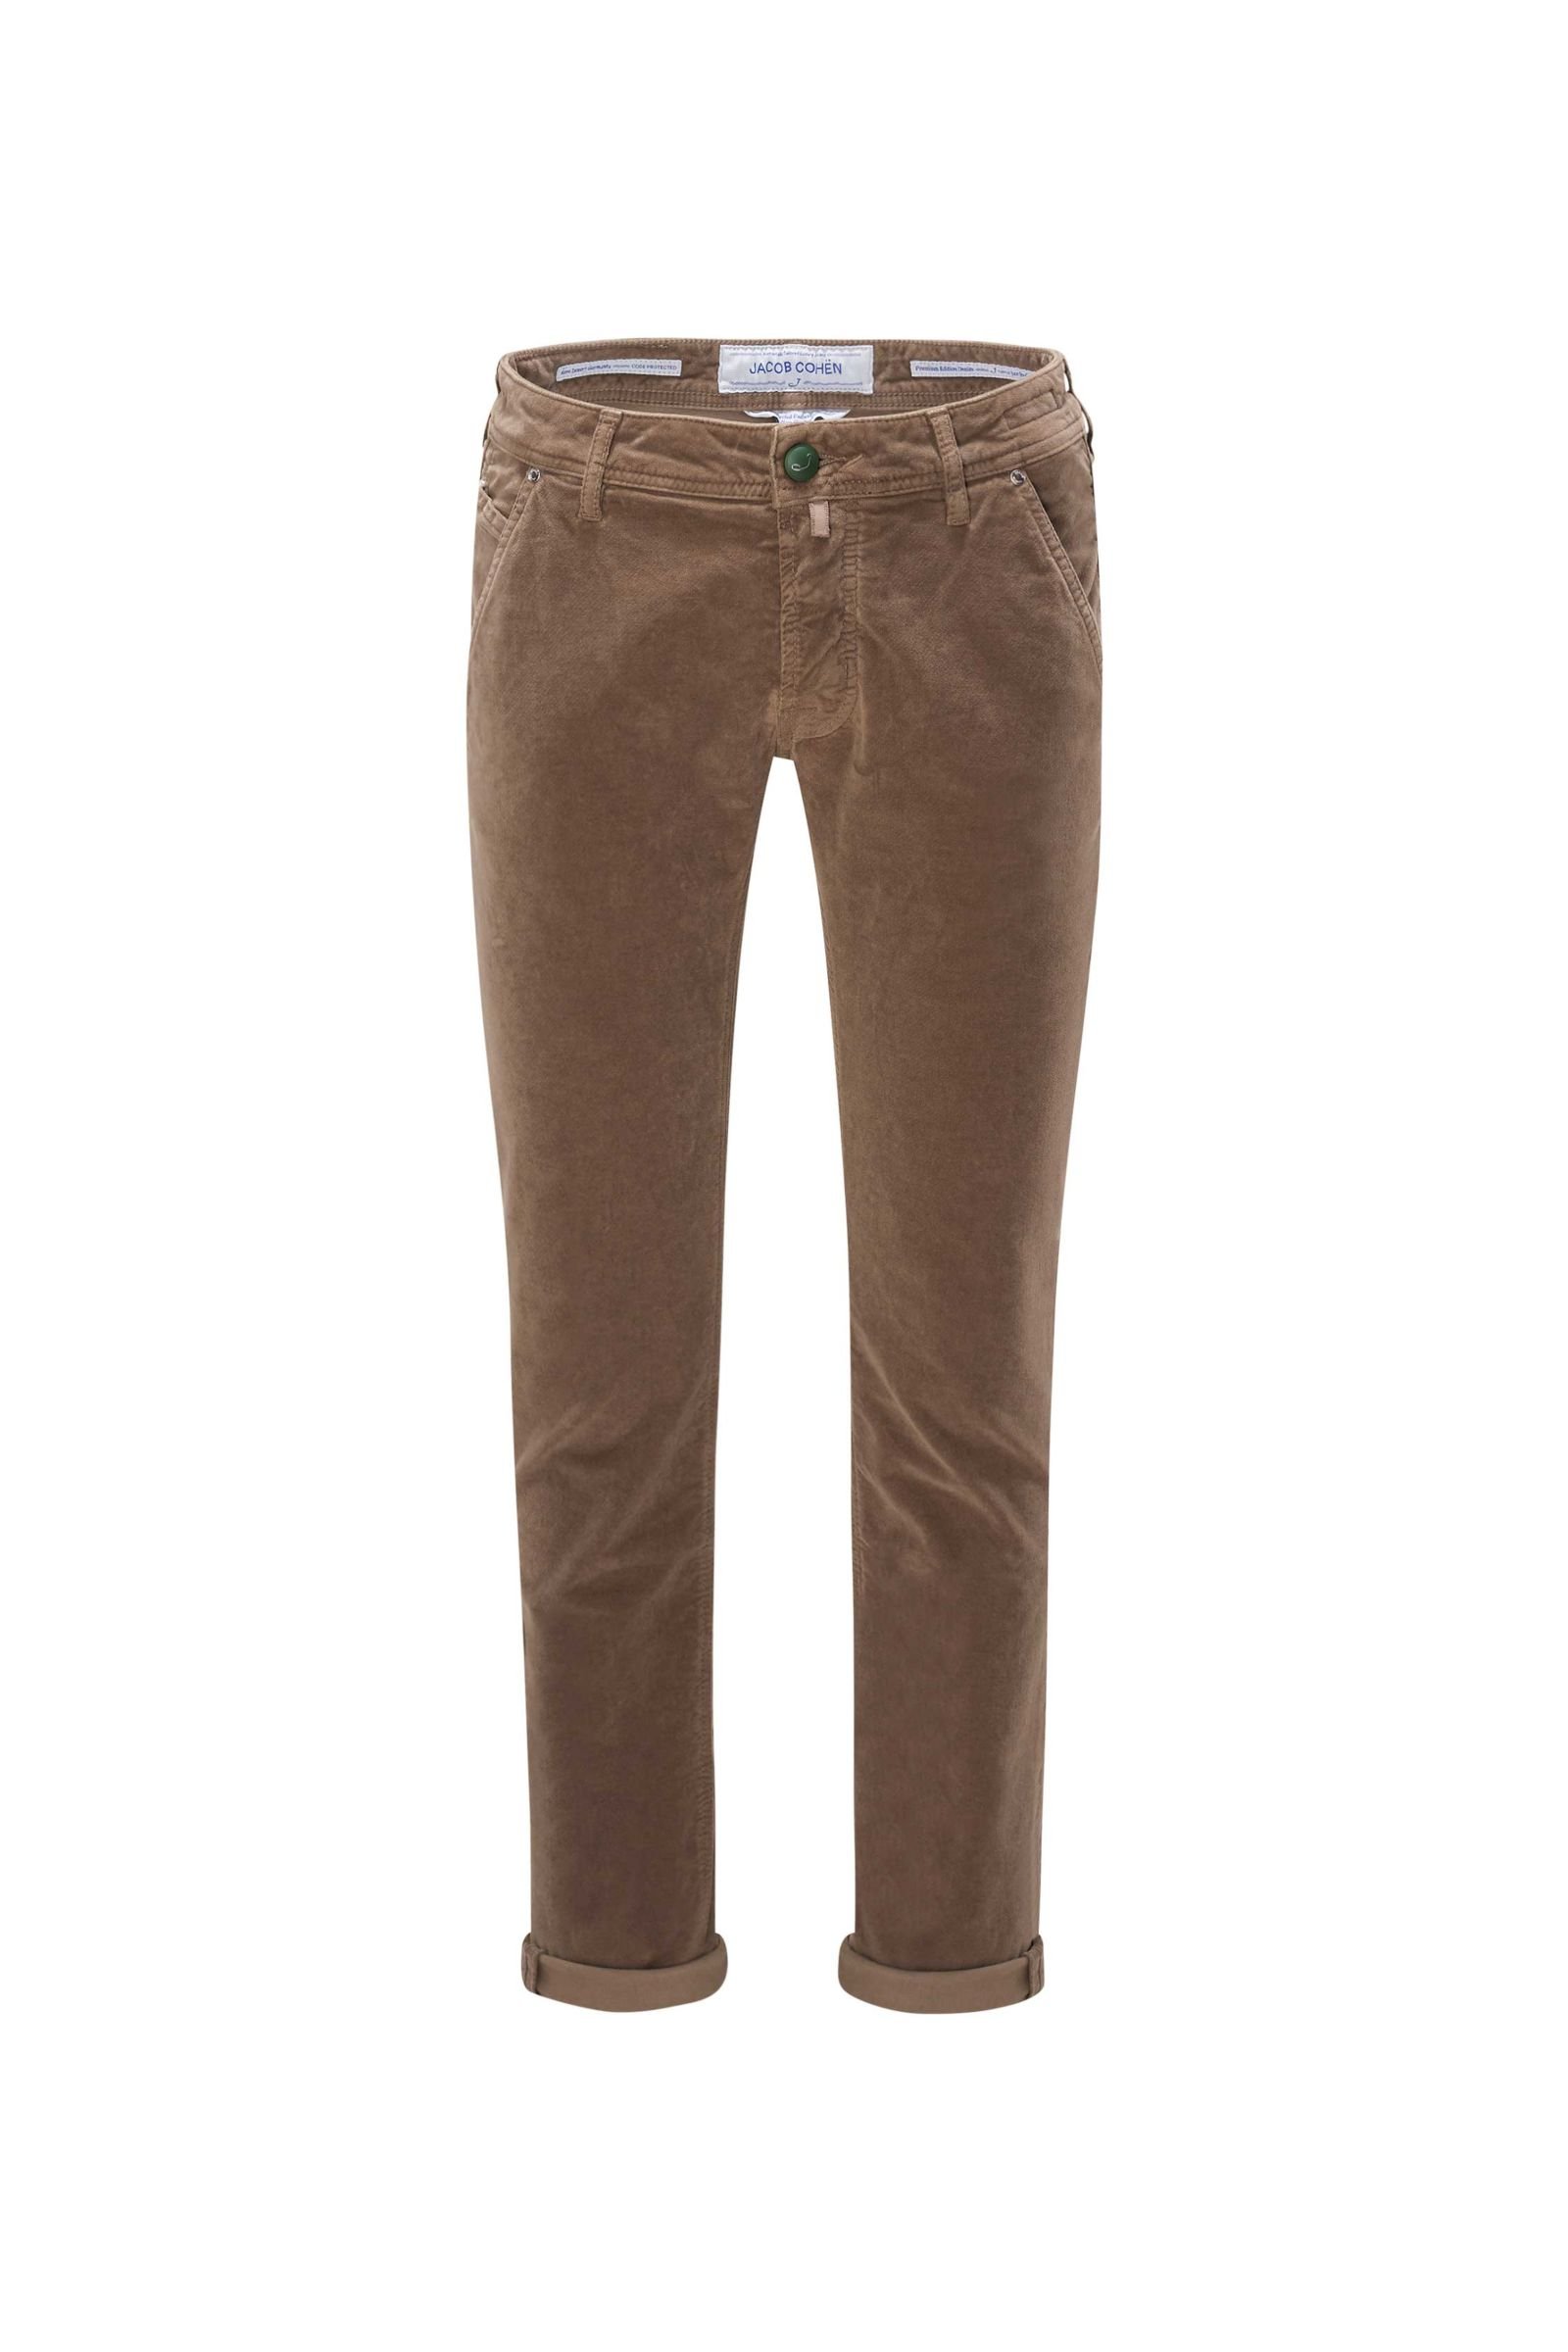 Fustian trousers 'J613 Comfort Slim Fit' grey-brown